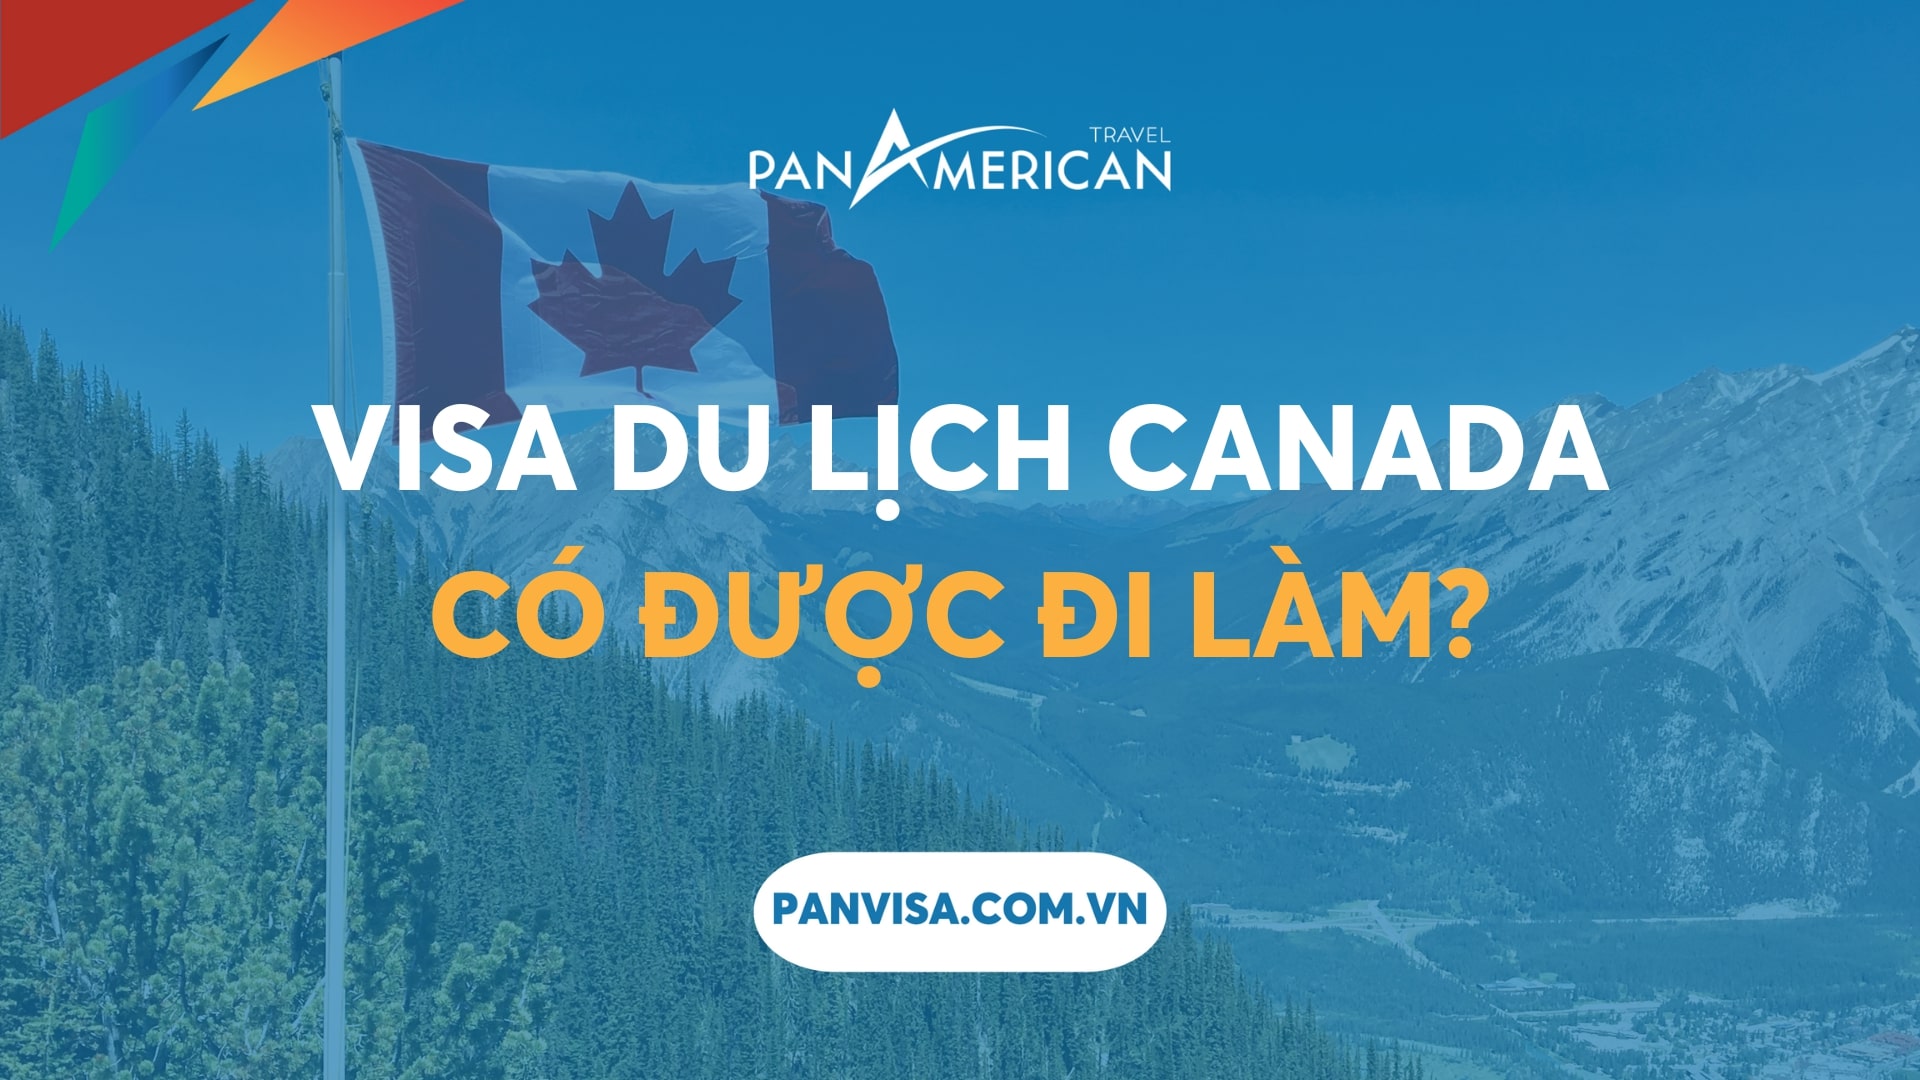 Visa du lịch Canada có được đi làm không?